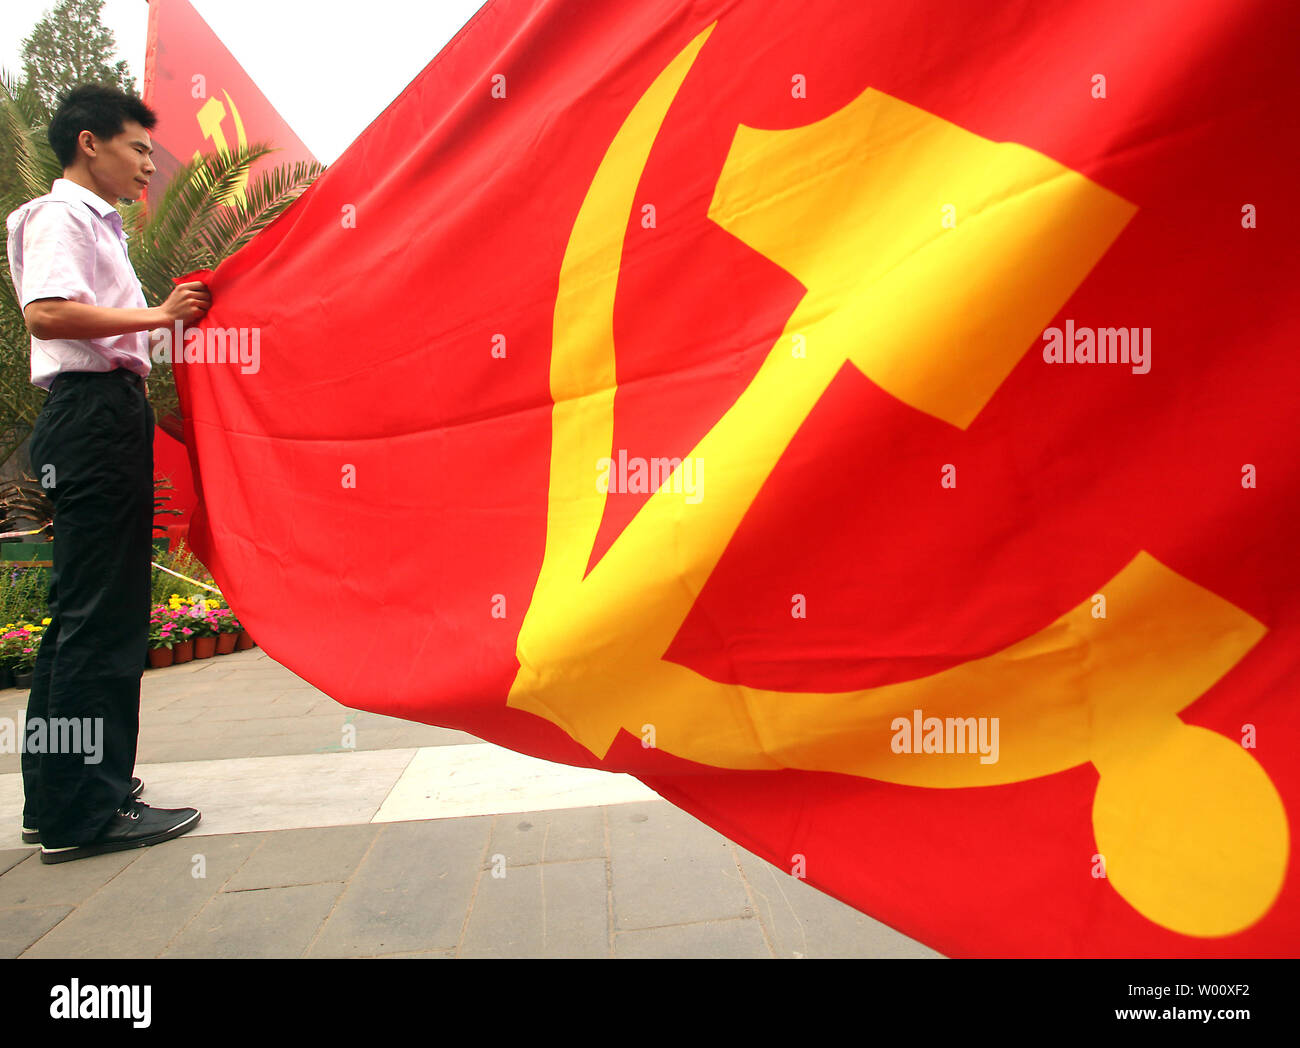 hombre chino sujeta el extremo de un gran Partido Comunista bandera durante celebración al aire libre en el camino hasta el 1 julio, el 90º aniversario de la fundación